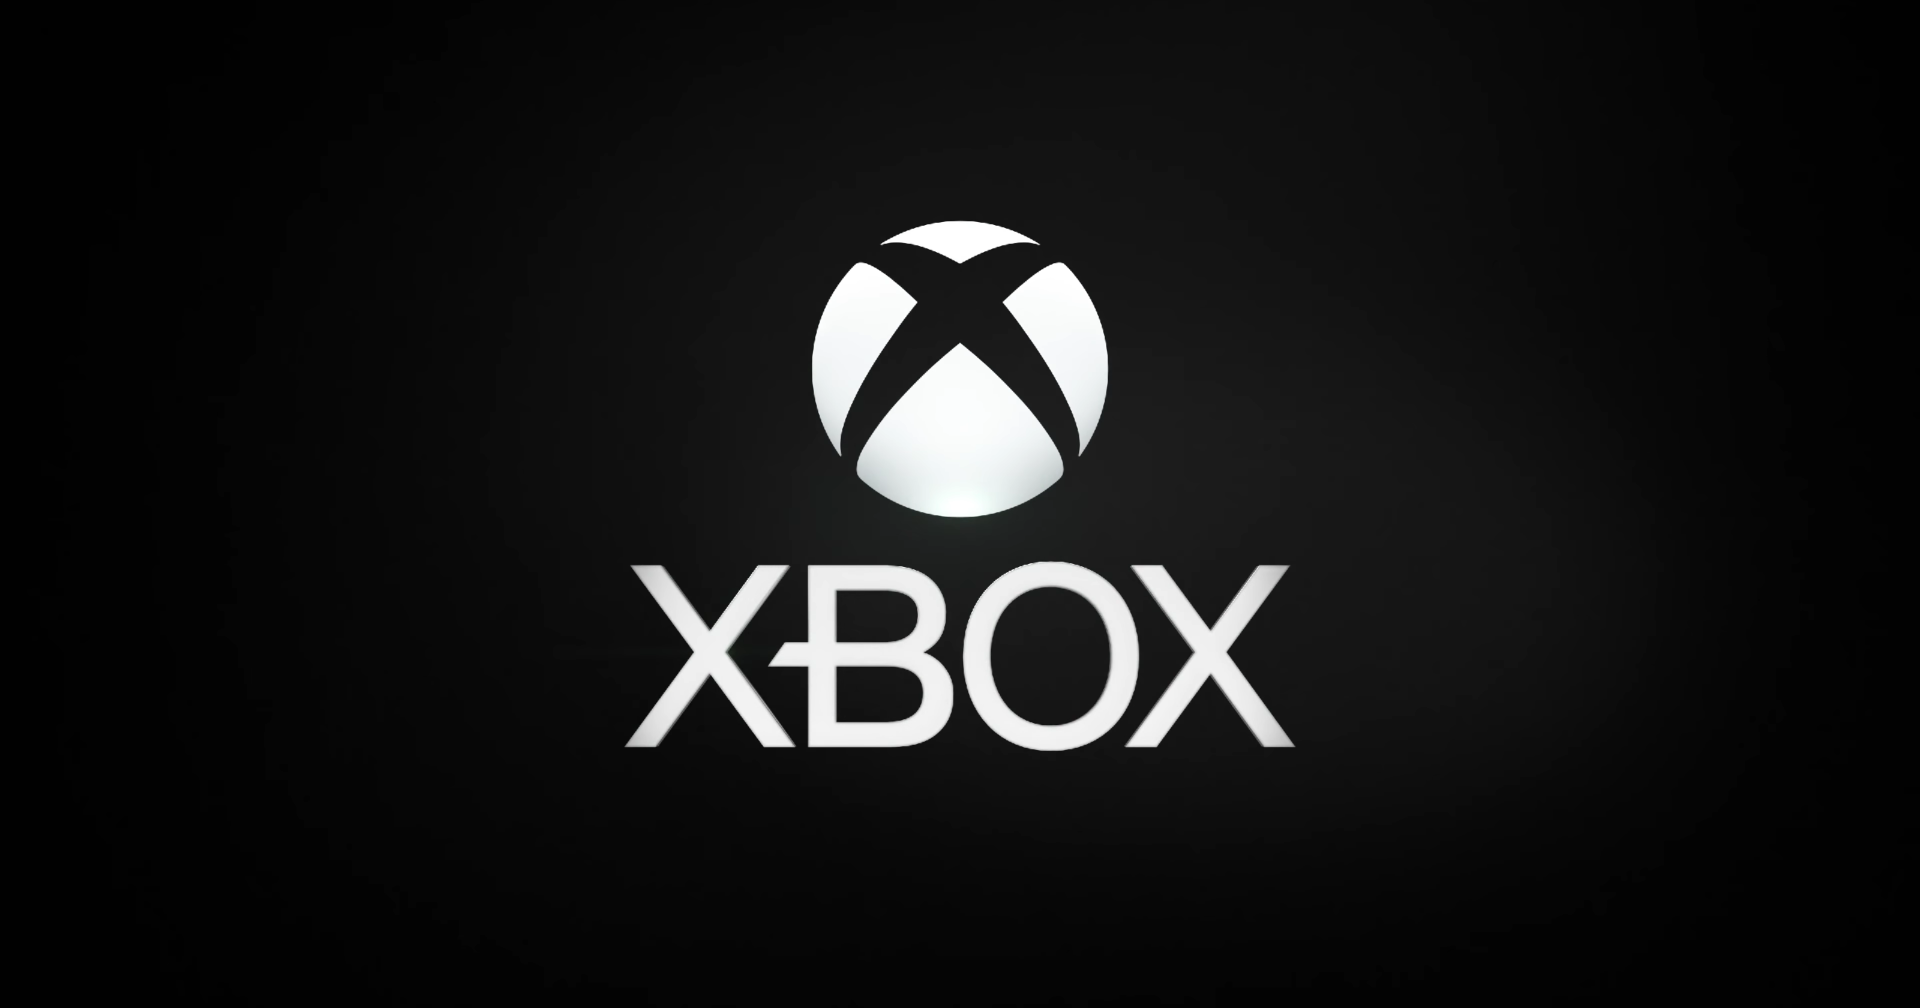 อดีตผู้บริหาร Xbox เผยว่าที่เคยอยากให้มีสงครามคอนโซล ก็เพื่อให้เกิดการแข่งขันระหว่าง Microsoft และ Sony